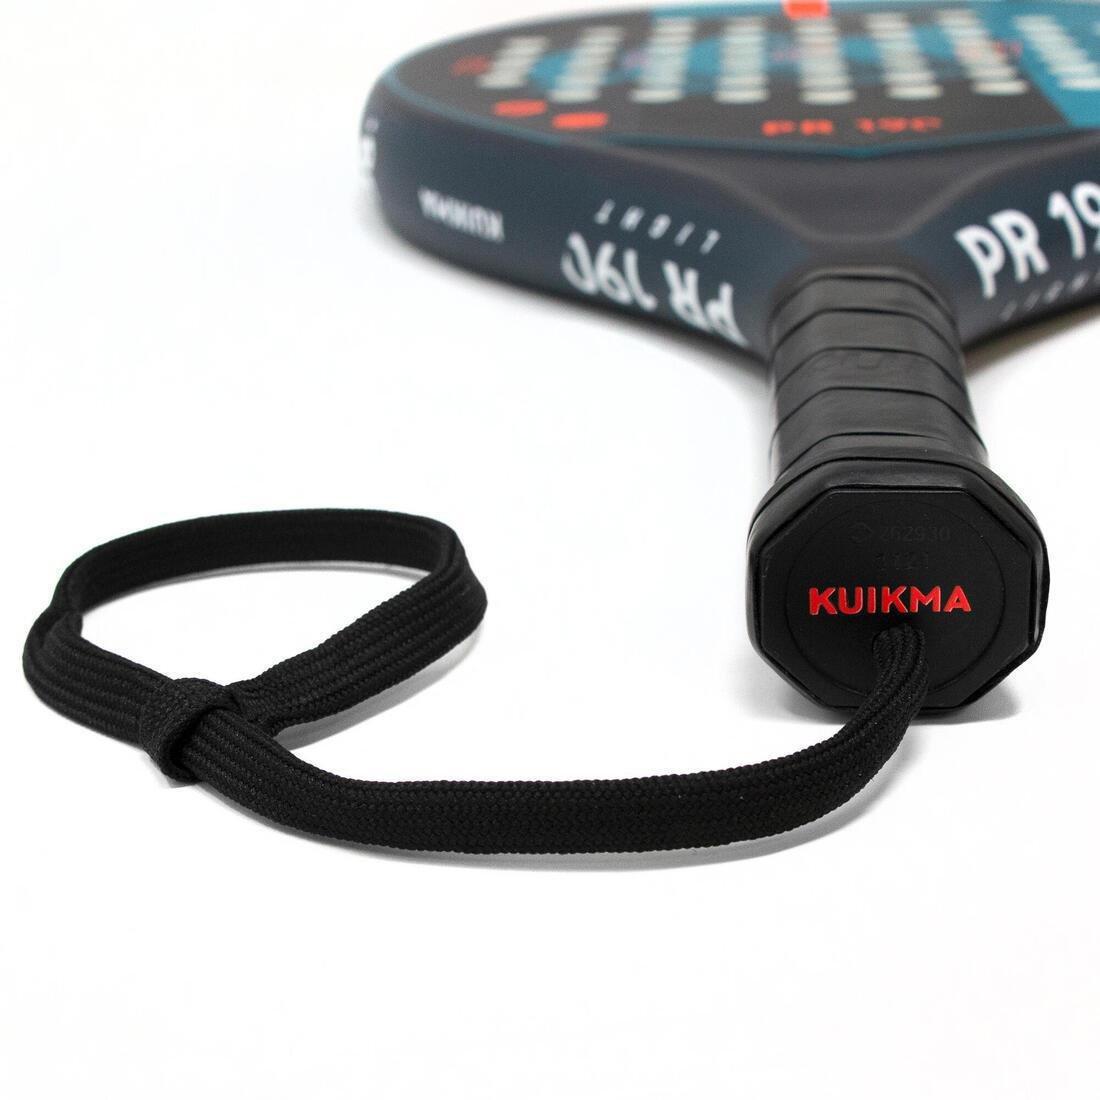 KUIKMA - Kids' Padel Racket PR 190, PINK